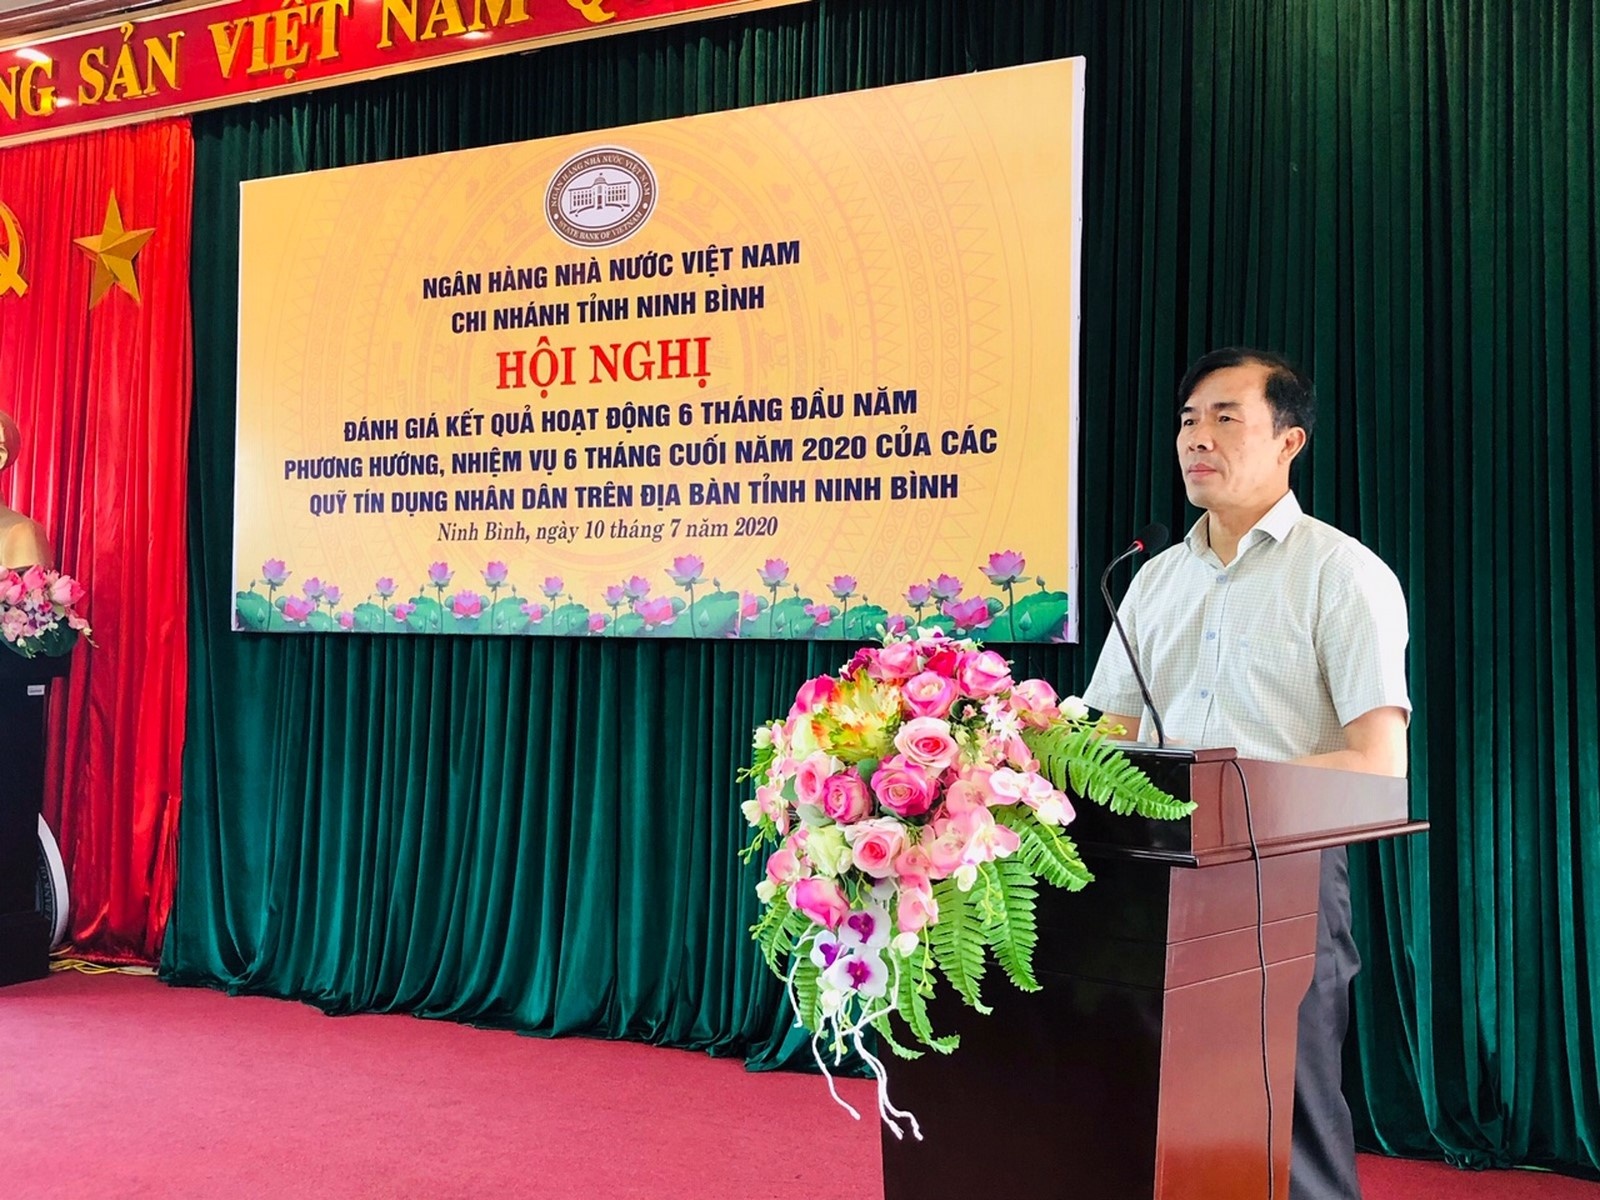 Giám đốc NHNN chi nhánh tỉnh Ninh Bình Nguyễn Minh Khôi phát biểu chỉ đạo tại hội nghị